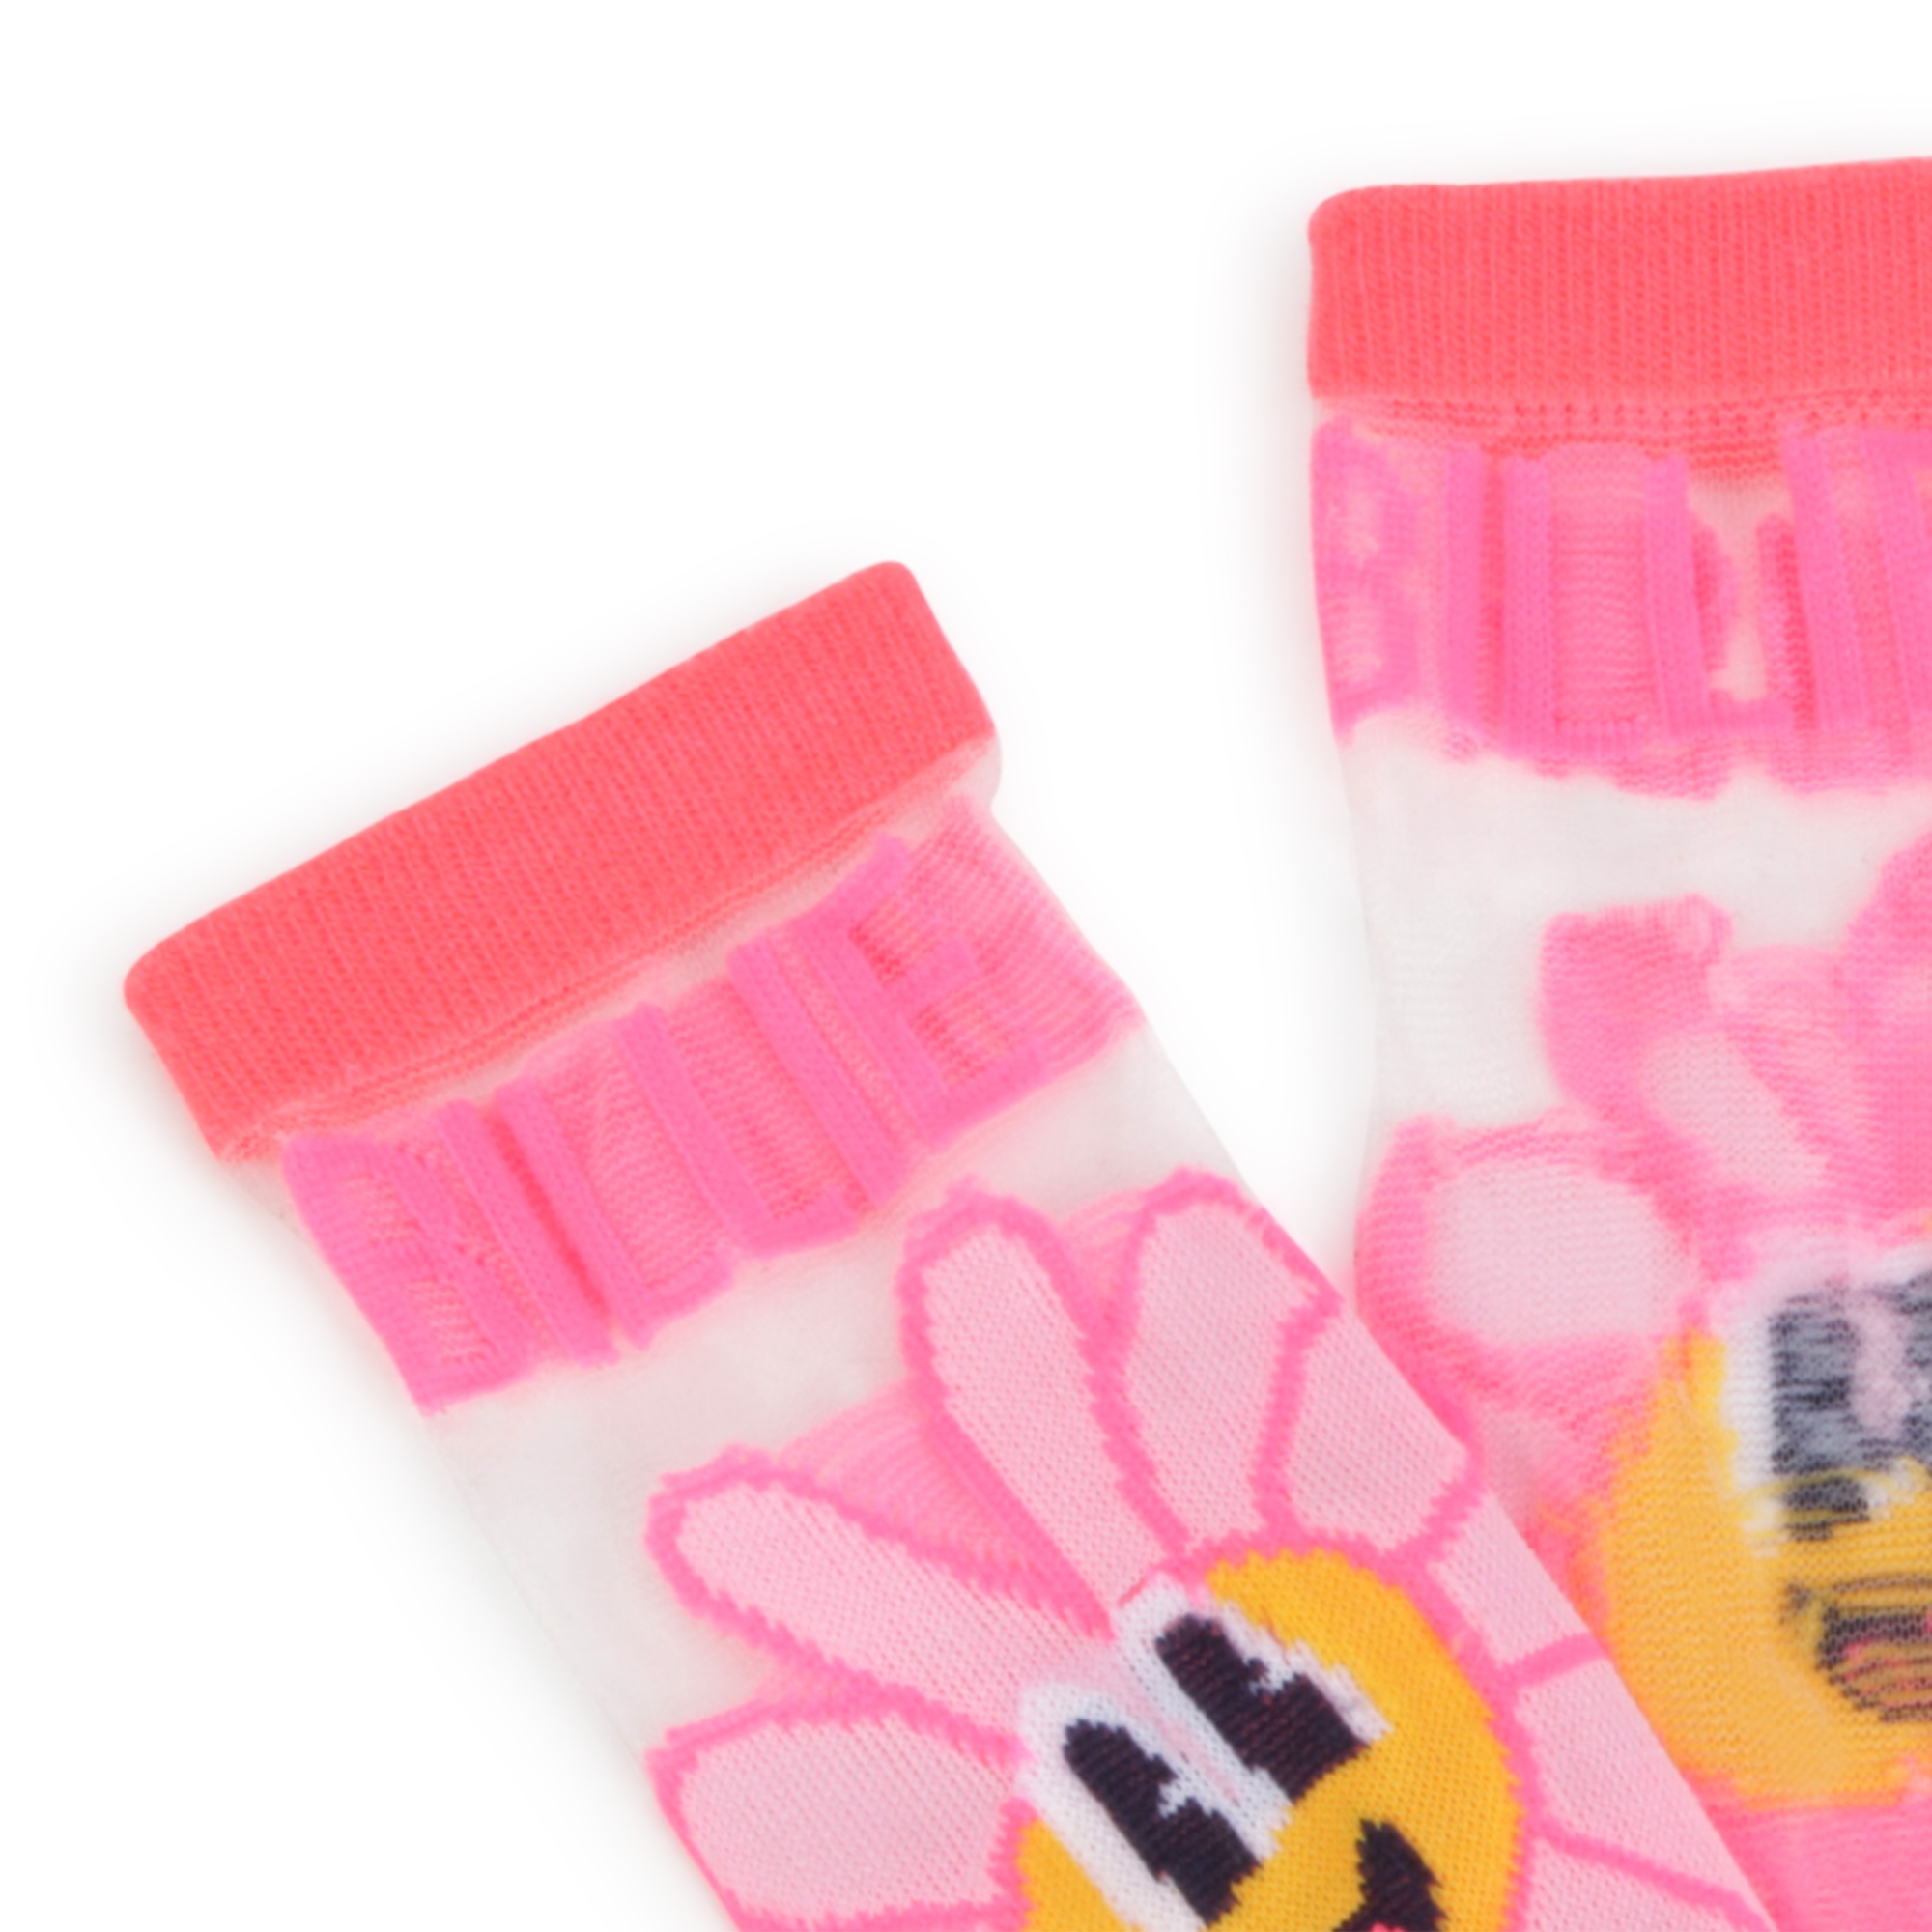 Halbhohe Socken mit Blumen BILLIEBLUSH Für MÄDCHEN